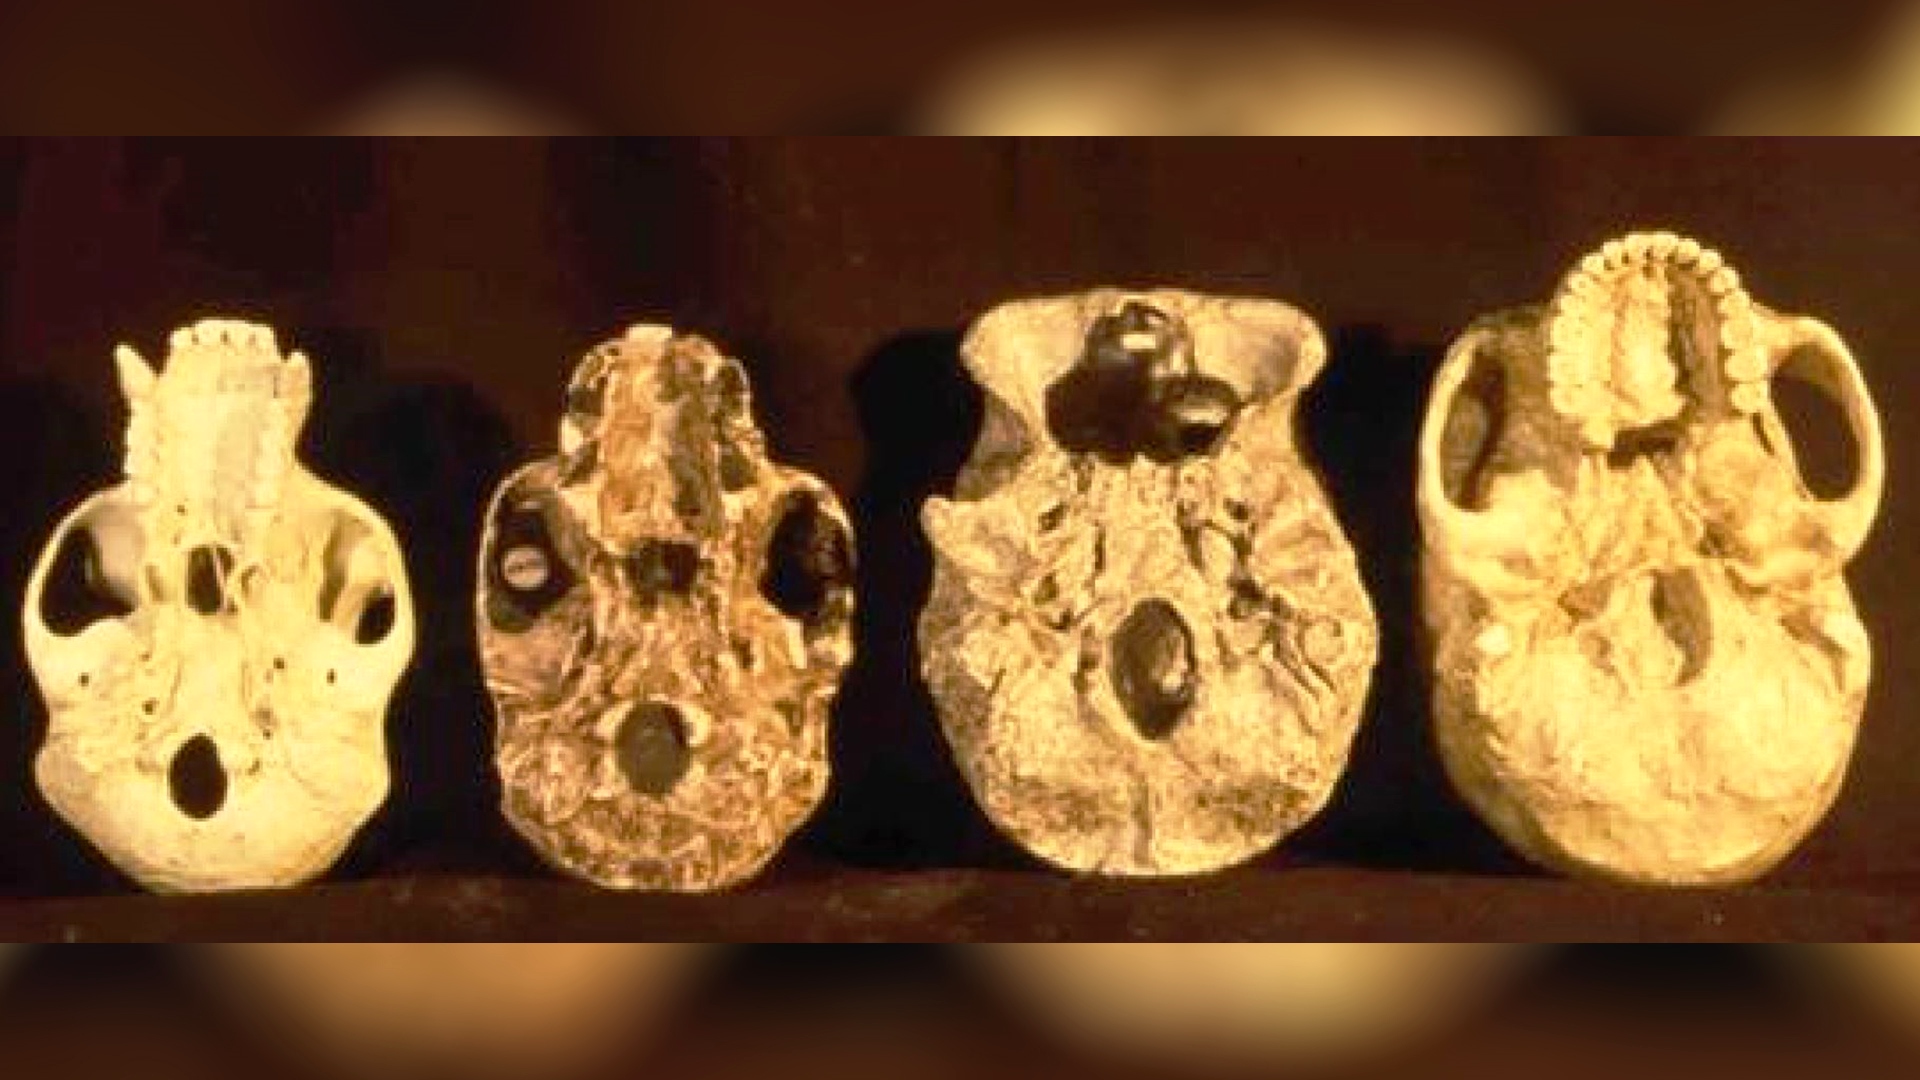 Foto principal: cuatro moldes de mandibulas de creneo donde se puede ver el tamaño del craneo según especie humana